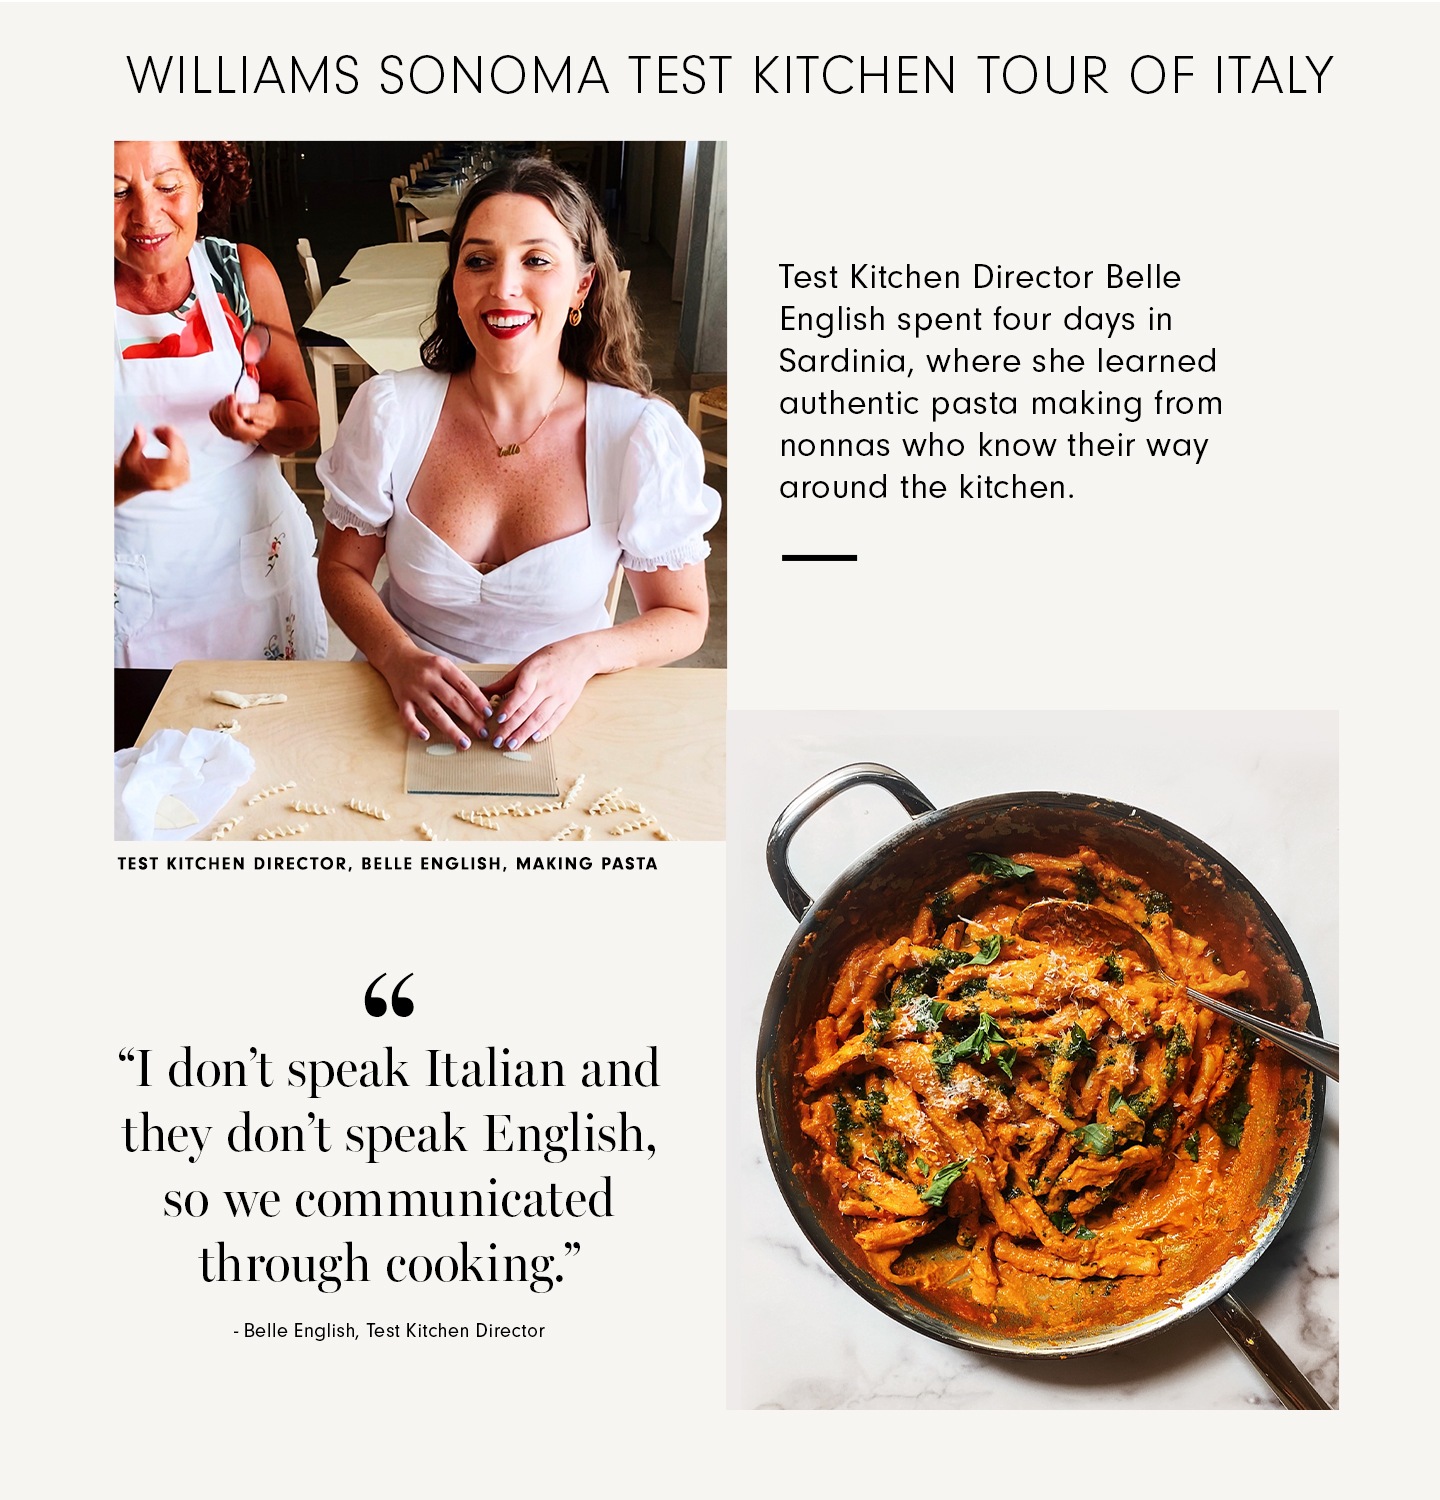 Williams Sonoma Test Kitchen Tour of Italy